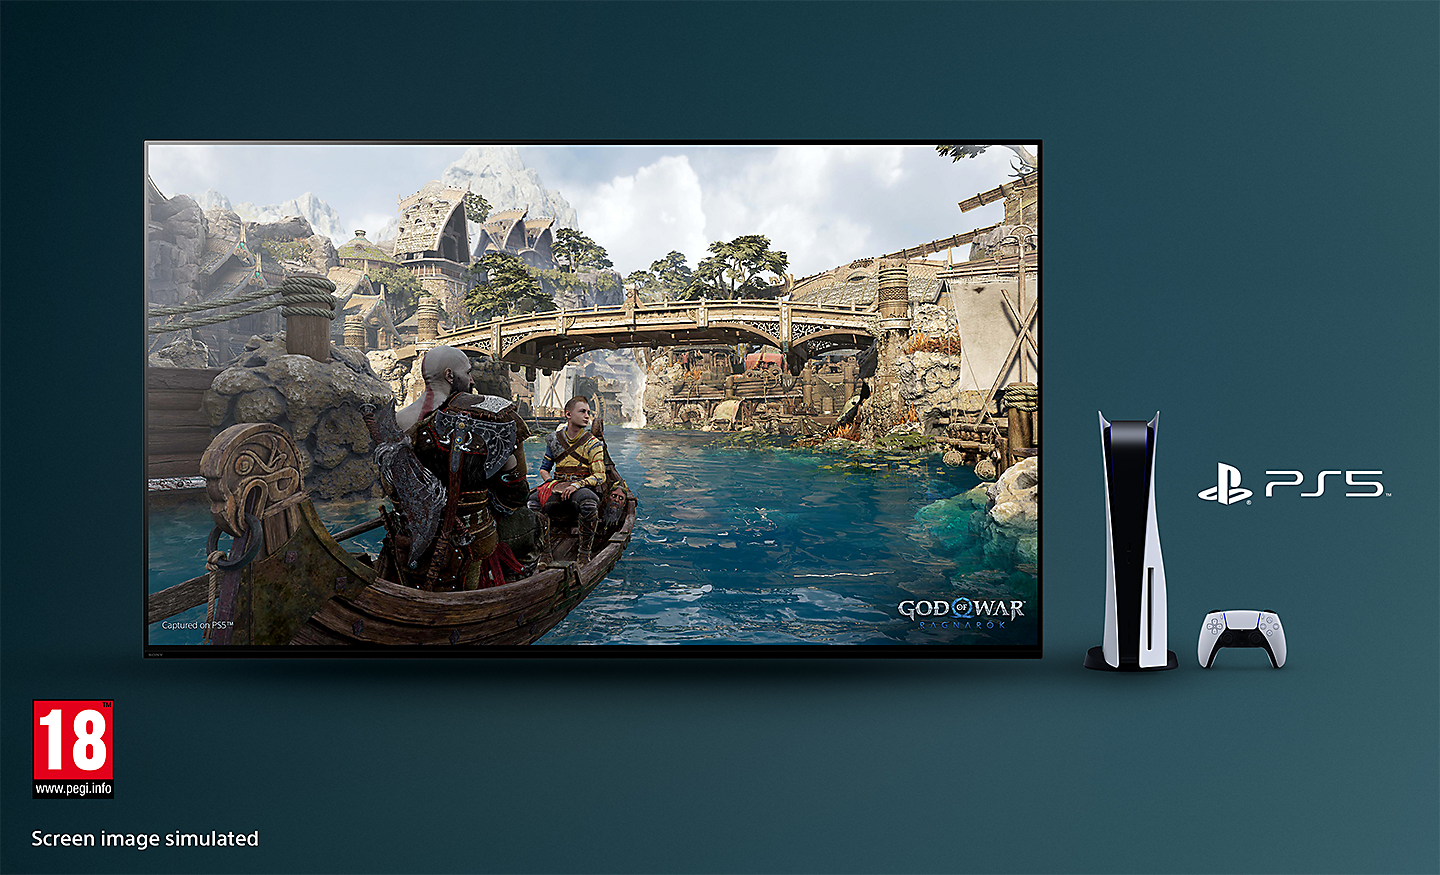 Televisor BRAVIA con captura de pantalla de God of War: Ragnarok que muestra un barco en un río y un puente de fondo con la consola PS5™, el mando y el logo de PS5™ a la derecha del televisor